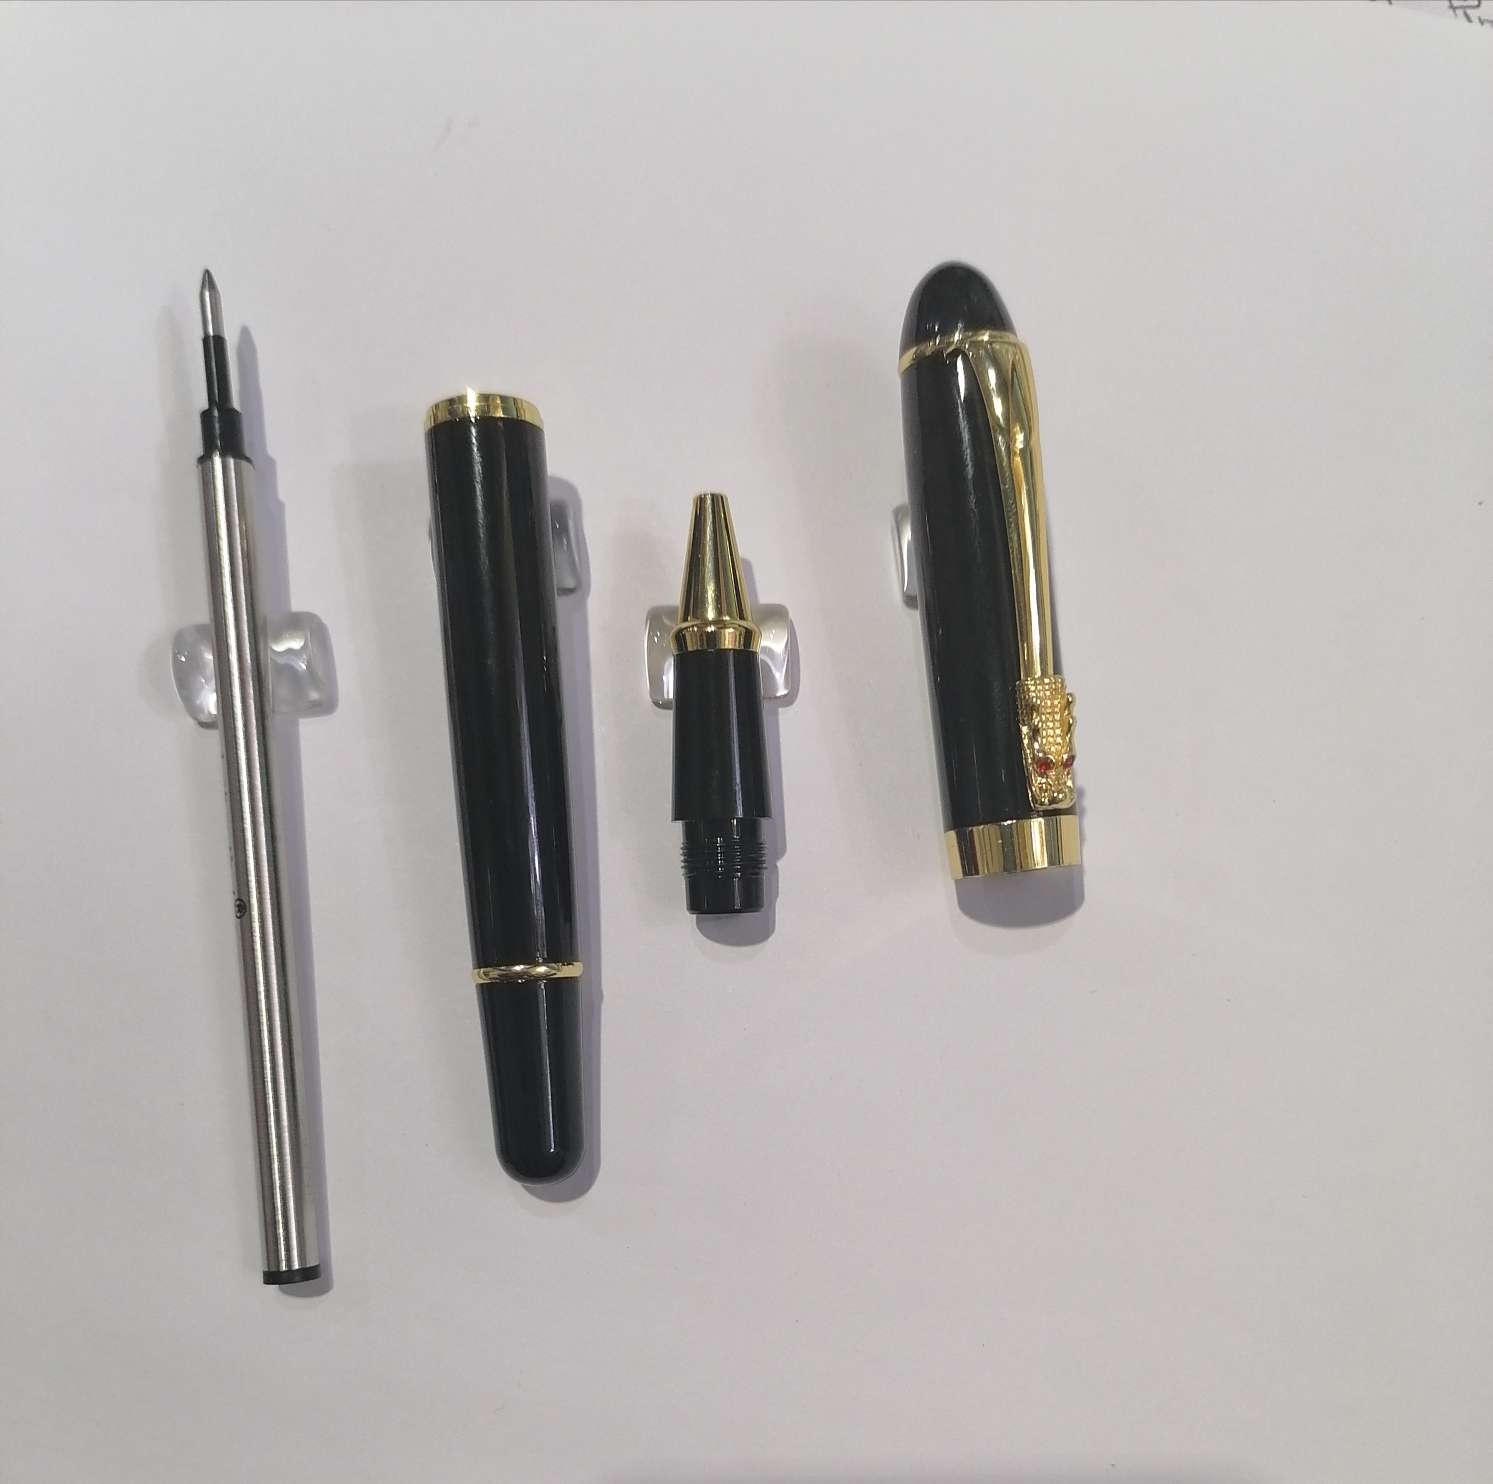 水笔 宝珠笔 签字笔 办公笔 广告笔 金属笔详情图5